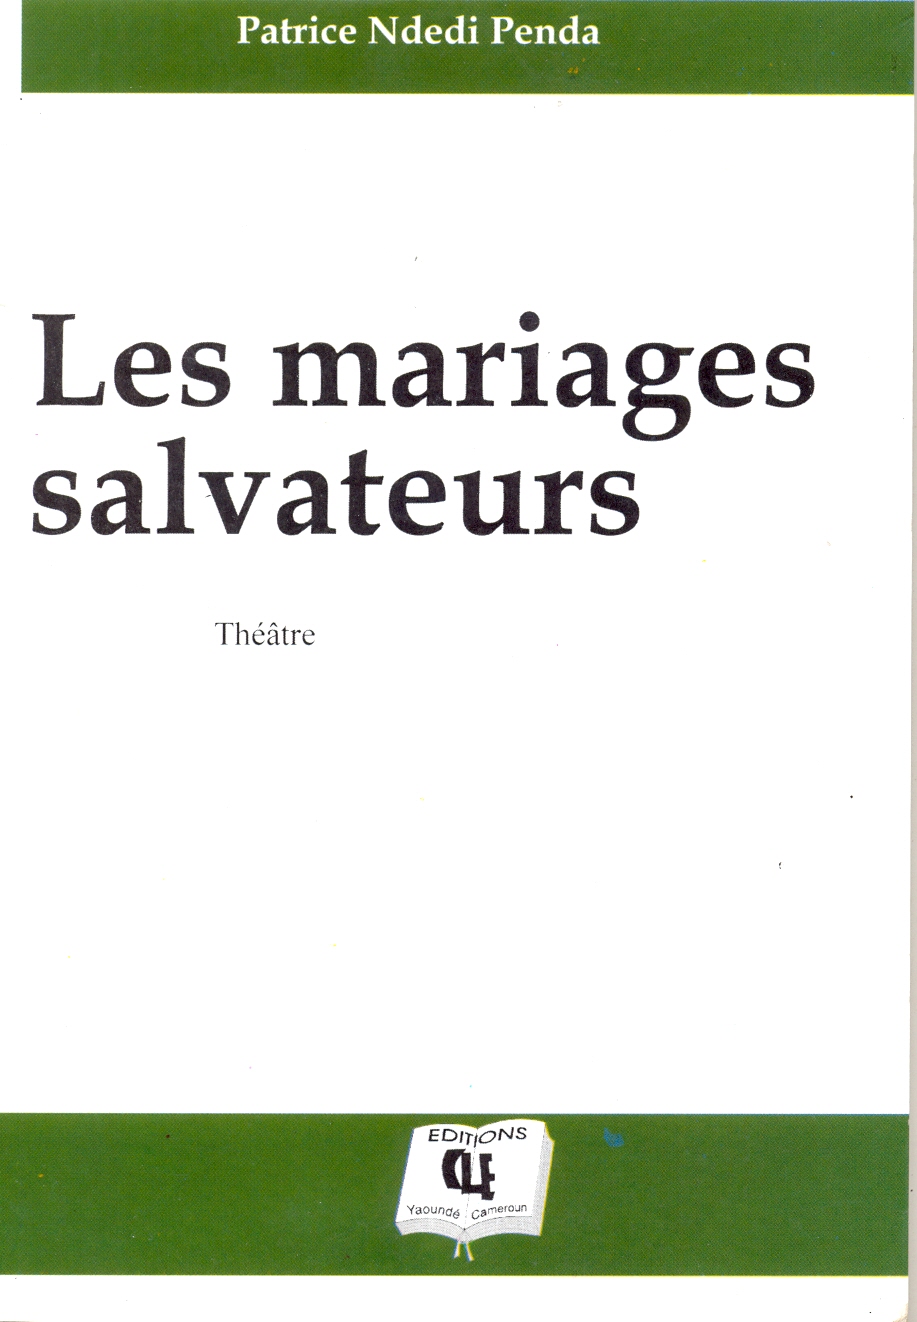 Les mariages salvateurs